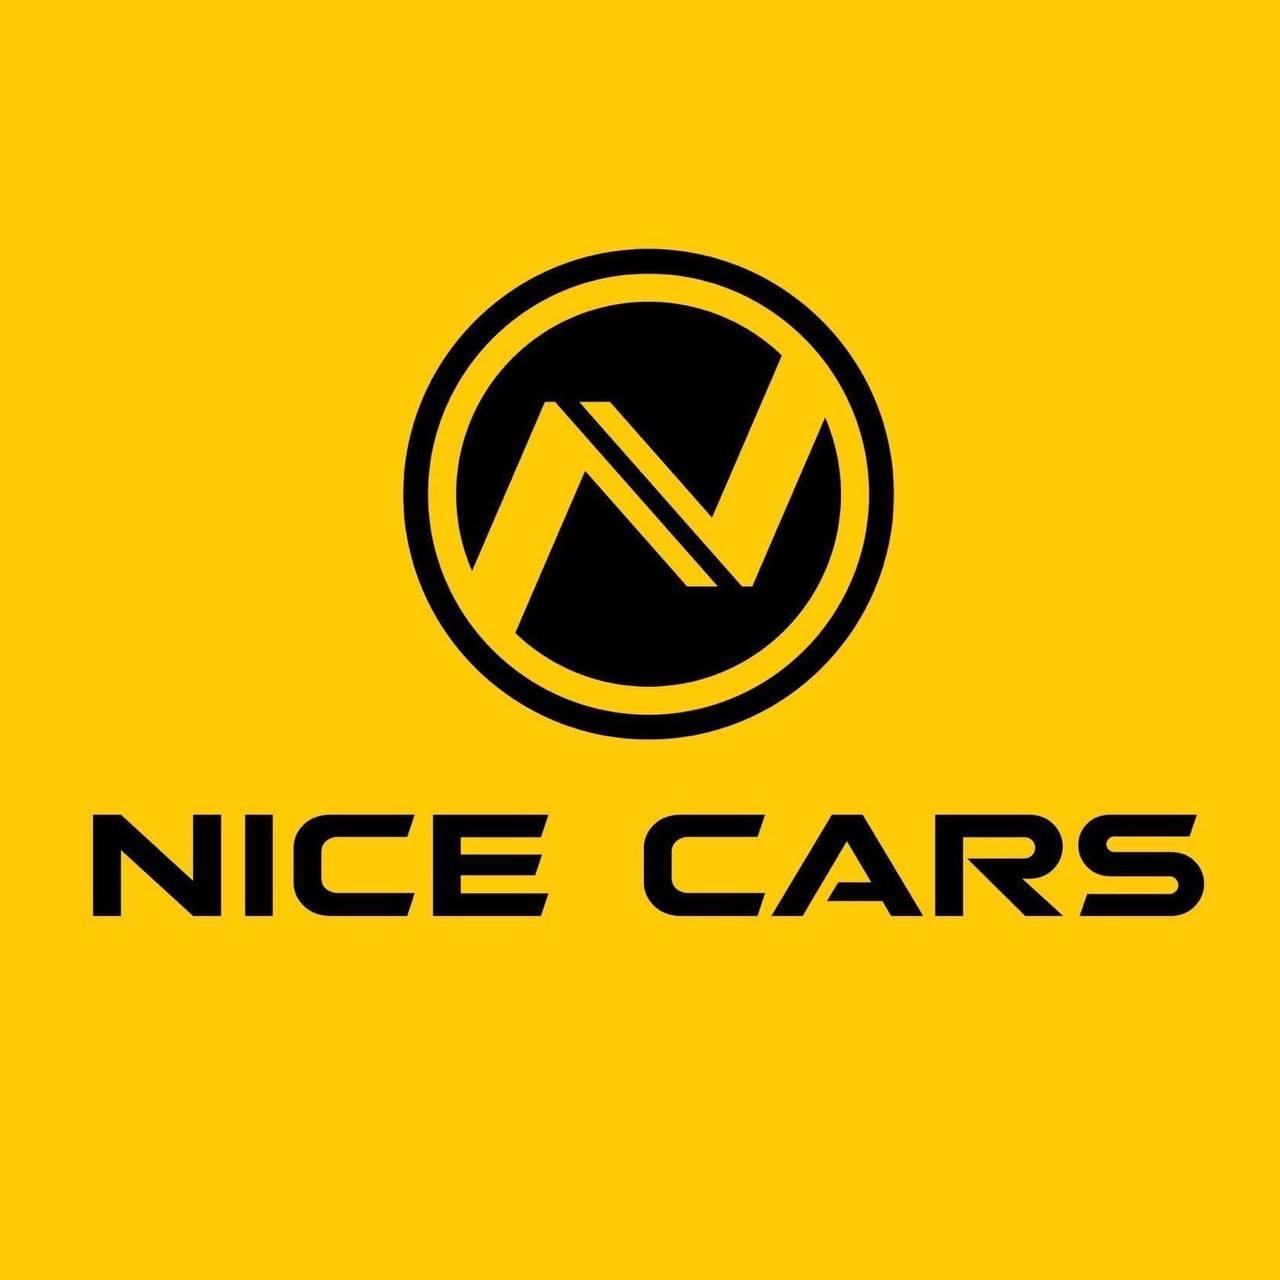 NICE CARS